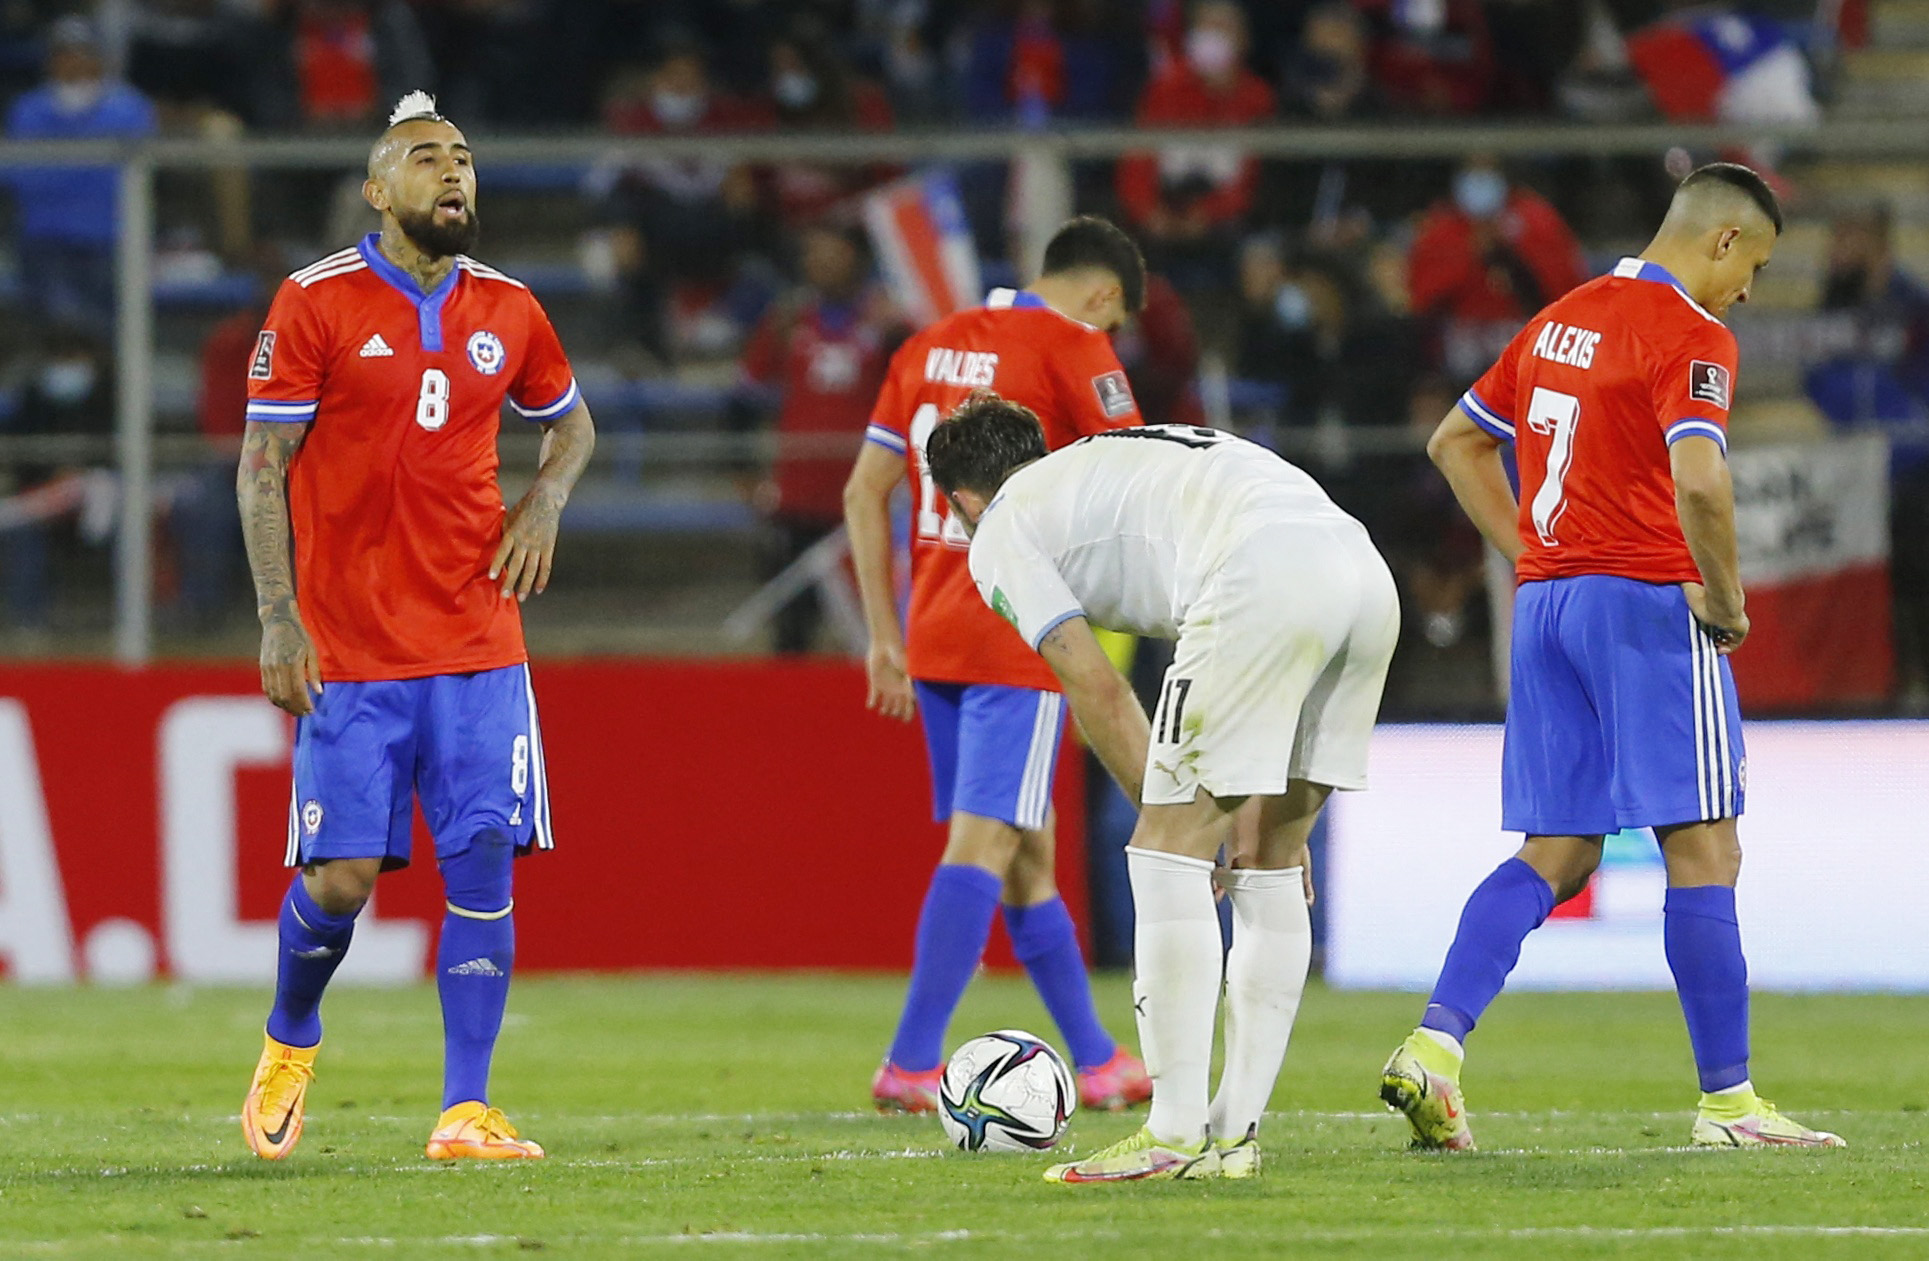 Jugadores uruguayos ponen el foco en Perú, aunque no se olvidan de Chile